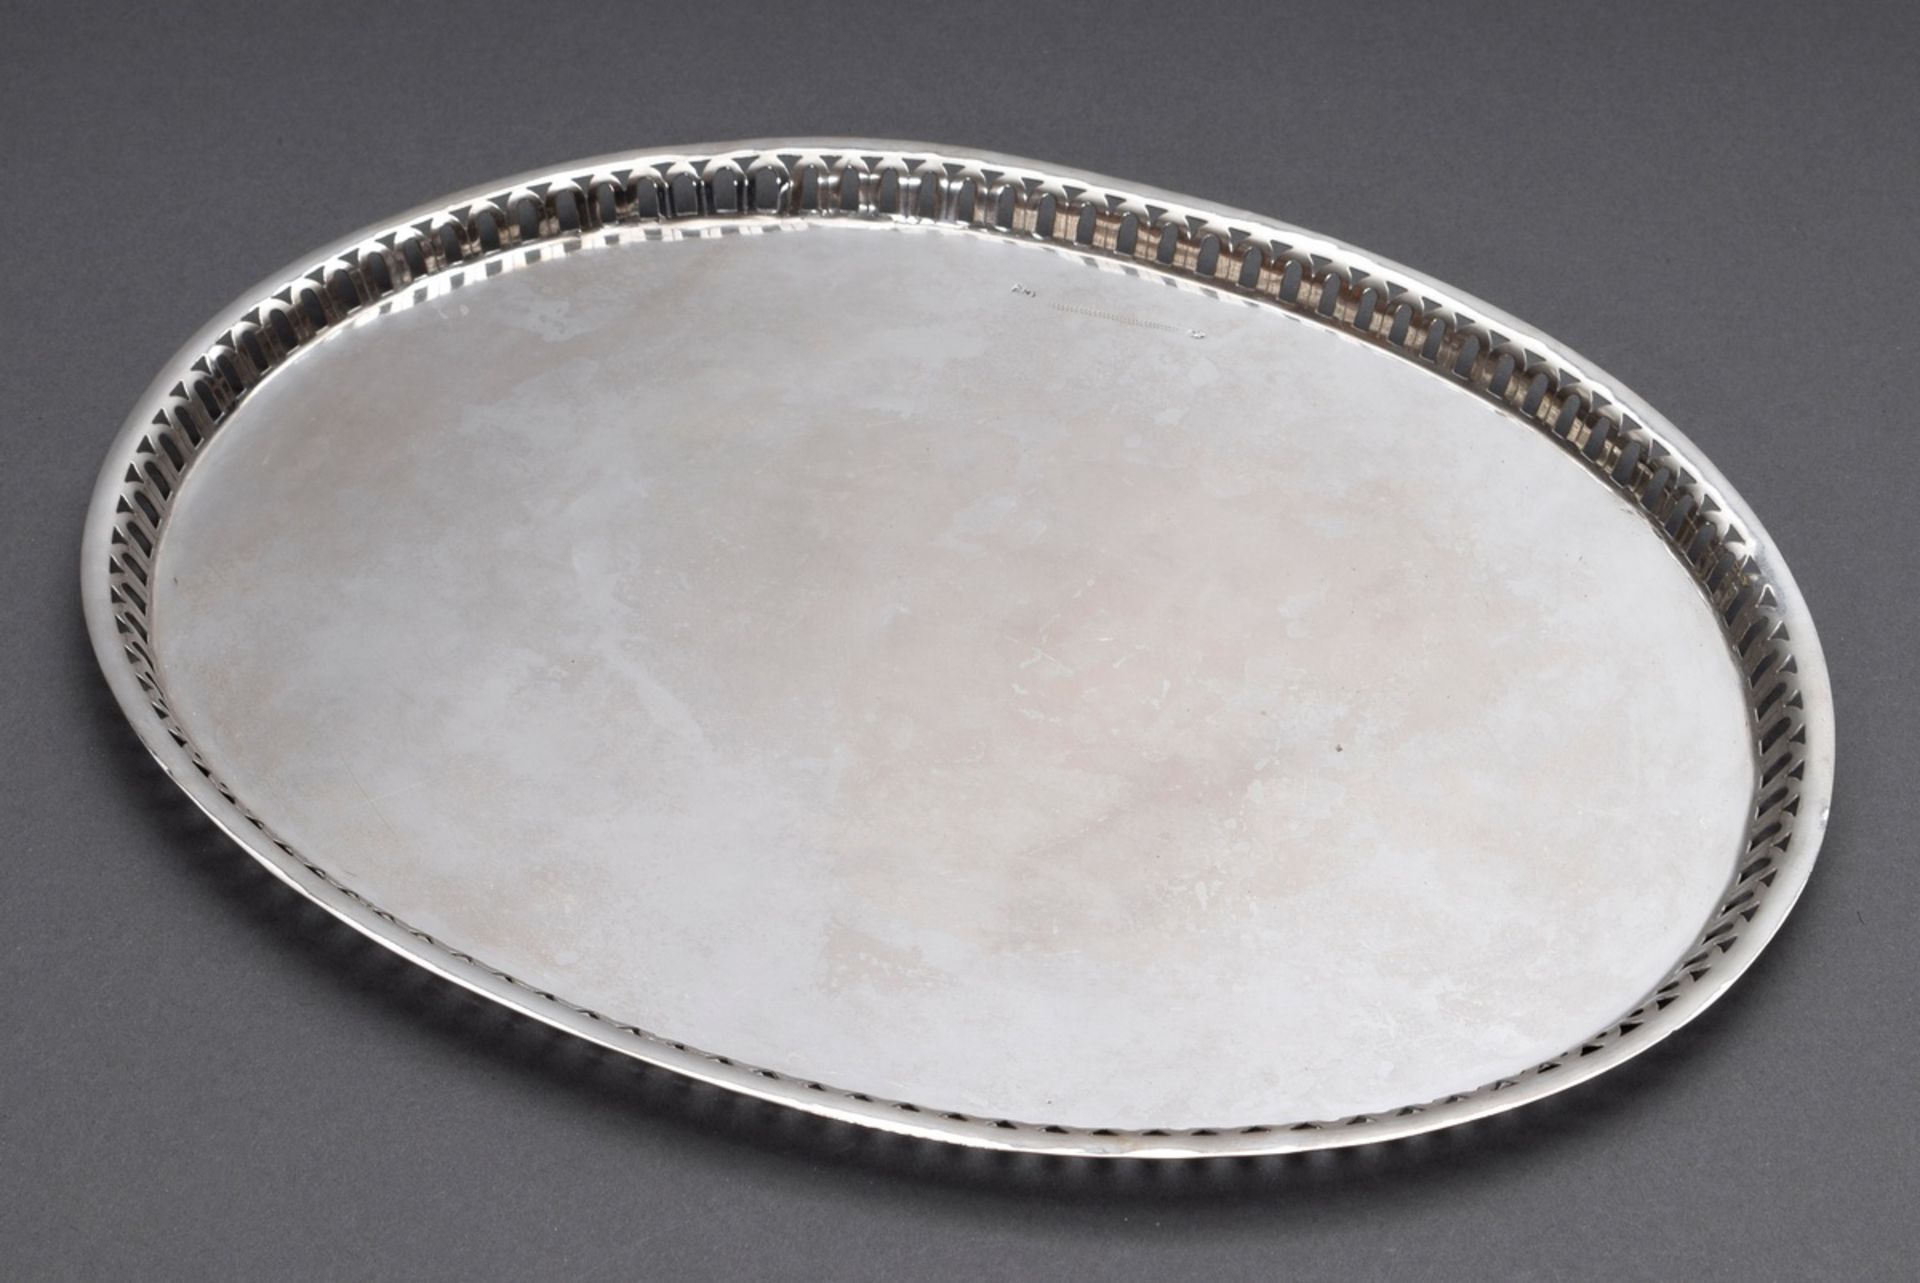 Ovales Tablett mit durchbrochenem Rand, MZ: CK, Beschau undeutlich, um 1800 (?), Silber (Tremuliers